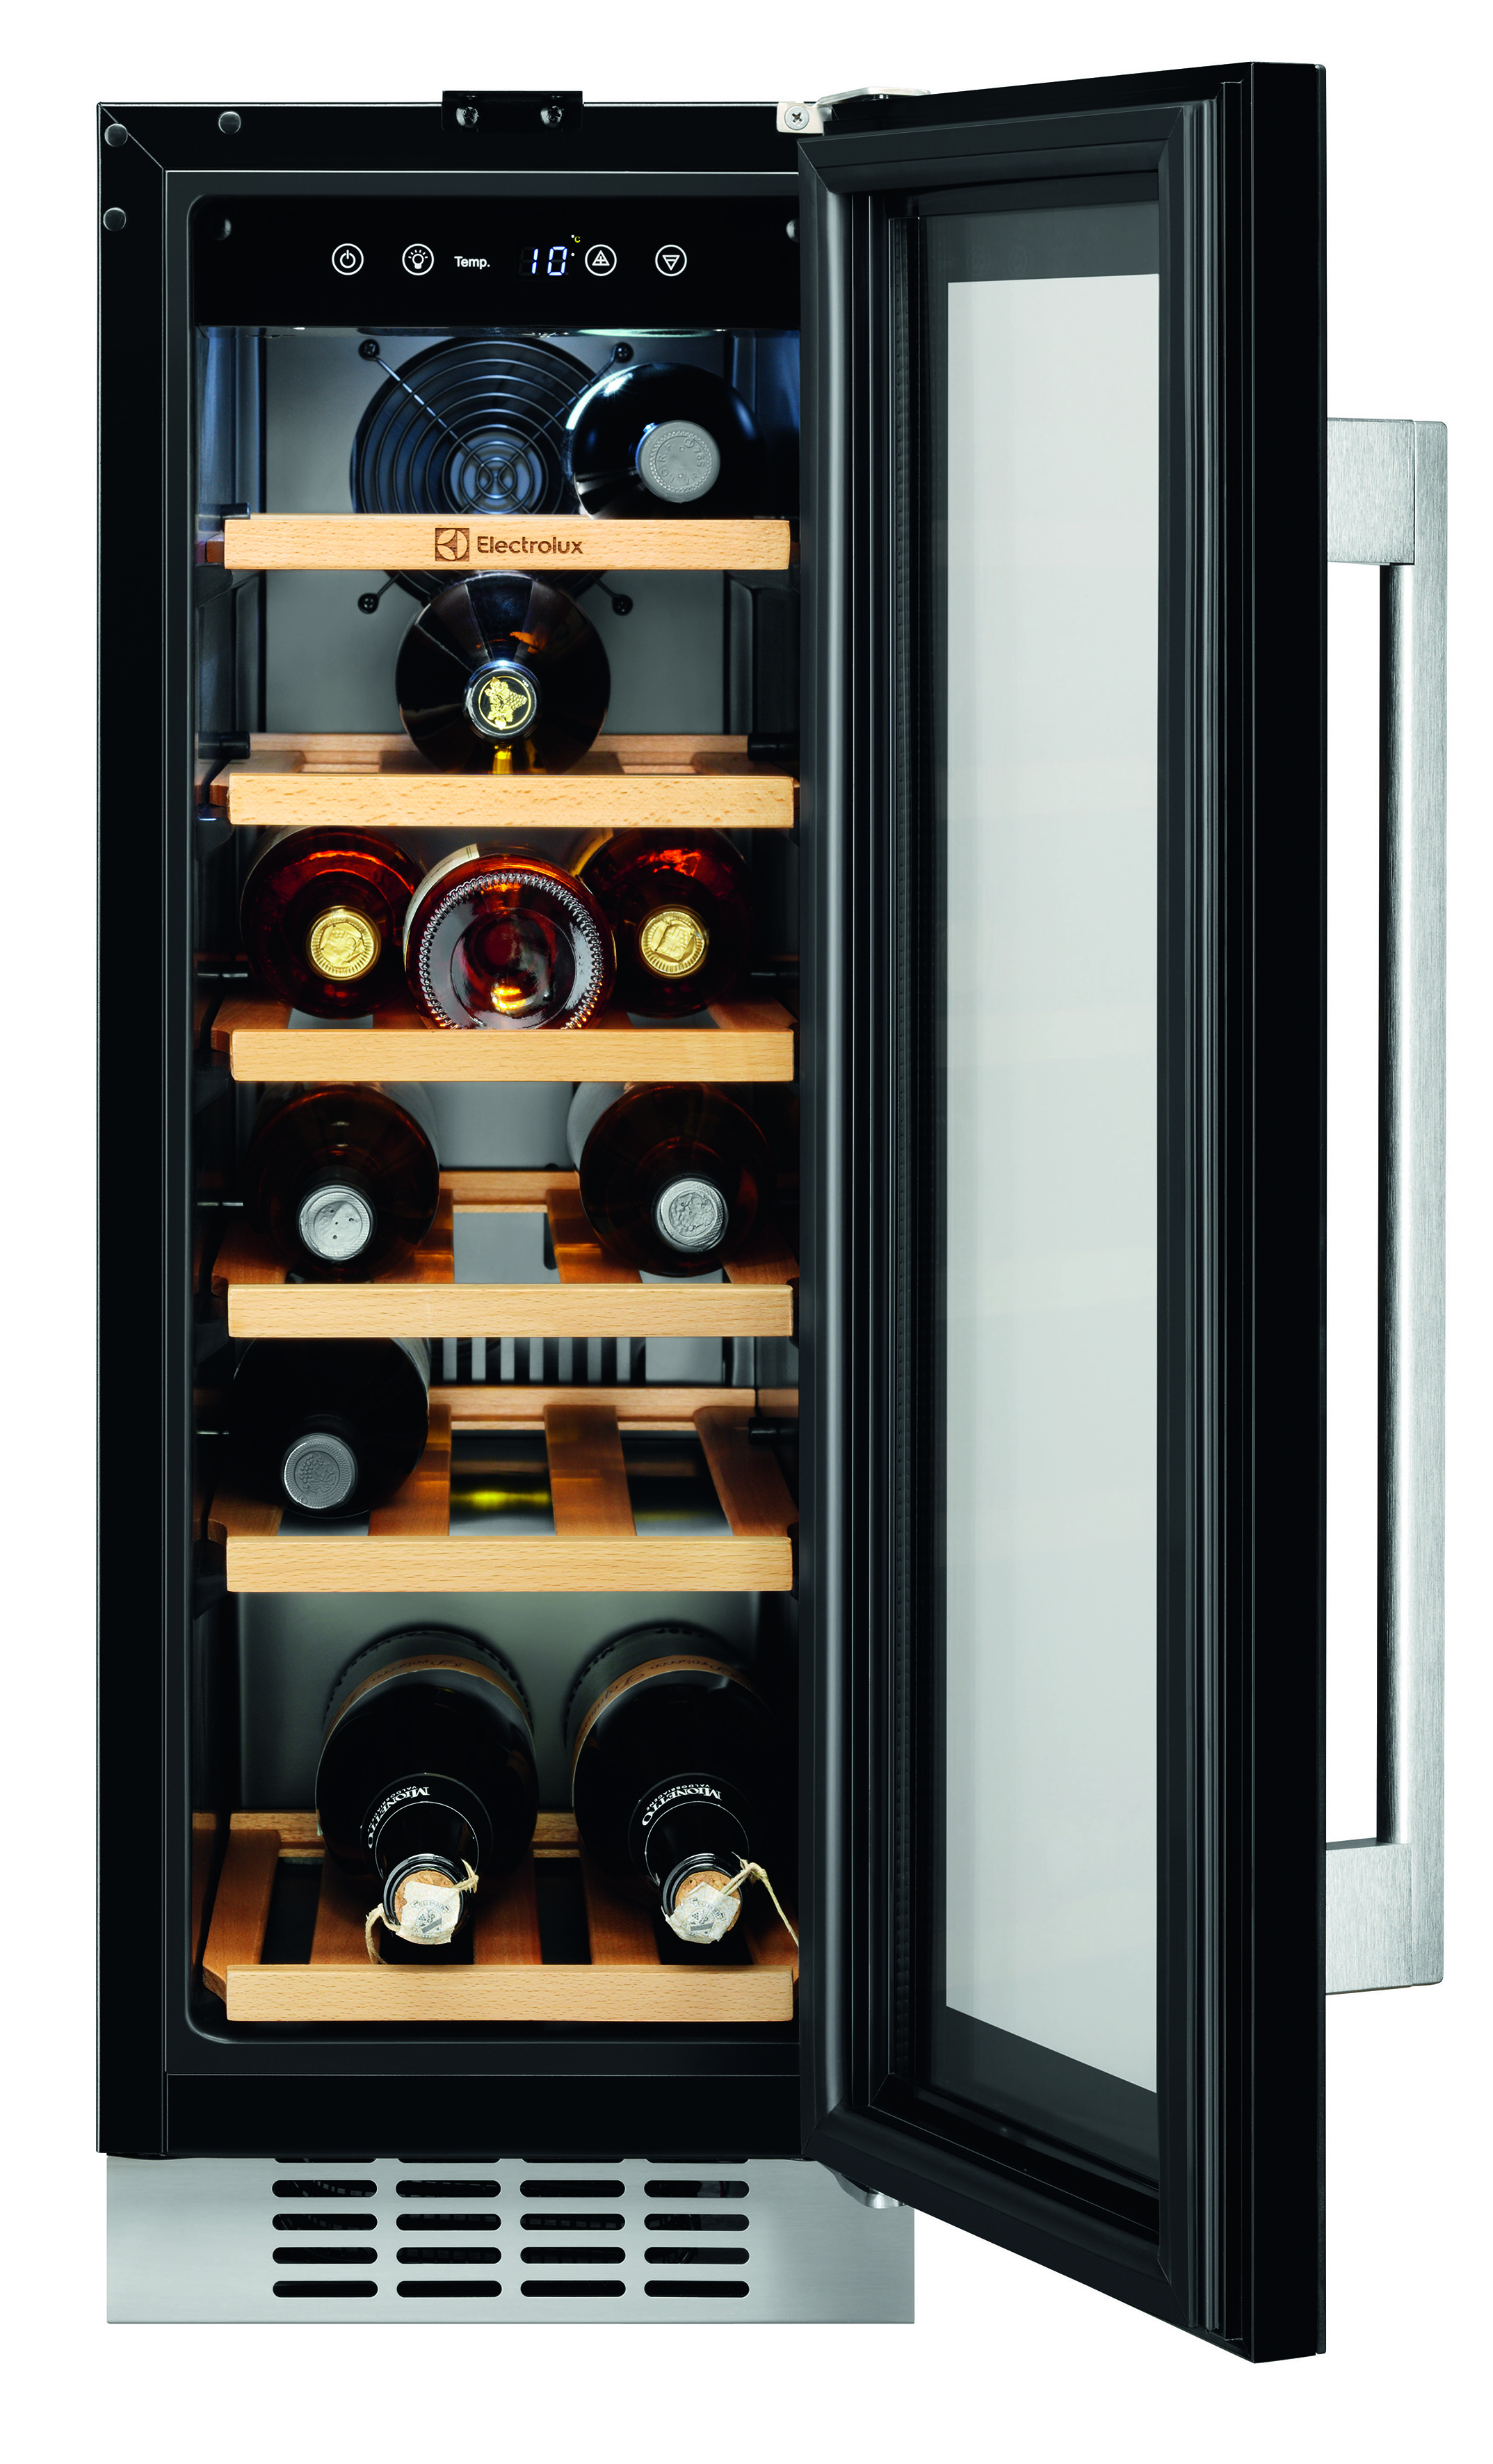 Винный холодильник встроенный. Встраиваемый винный шкаф Electrolux ERW 0673 AOA. Винный шкаф AEG swb63001dg. Винный шкаф Электролюкс встраиваемый. Винный шкаф Электролюкс erw0673aoa.